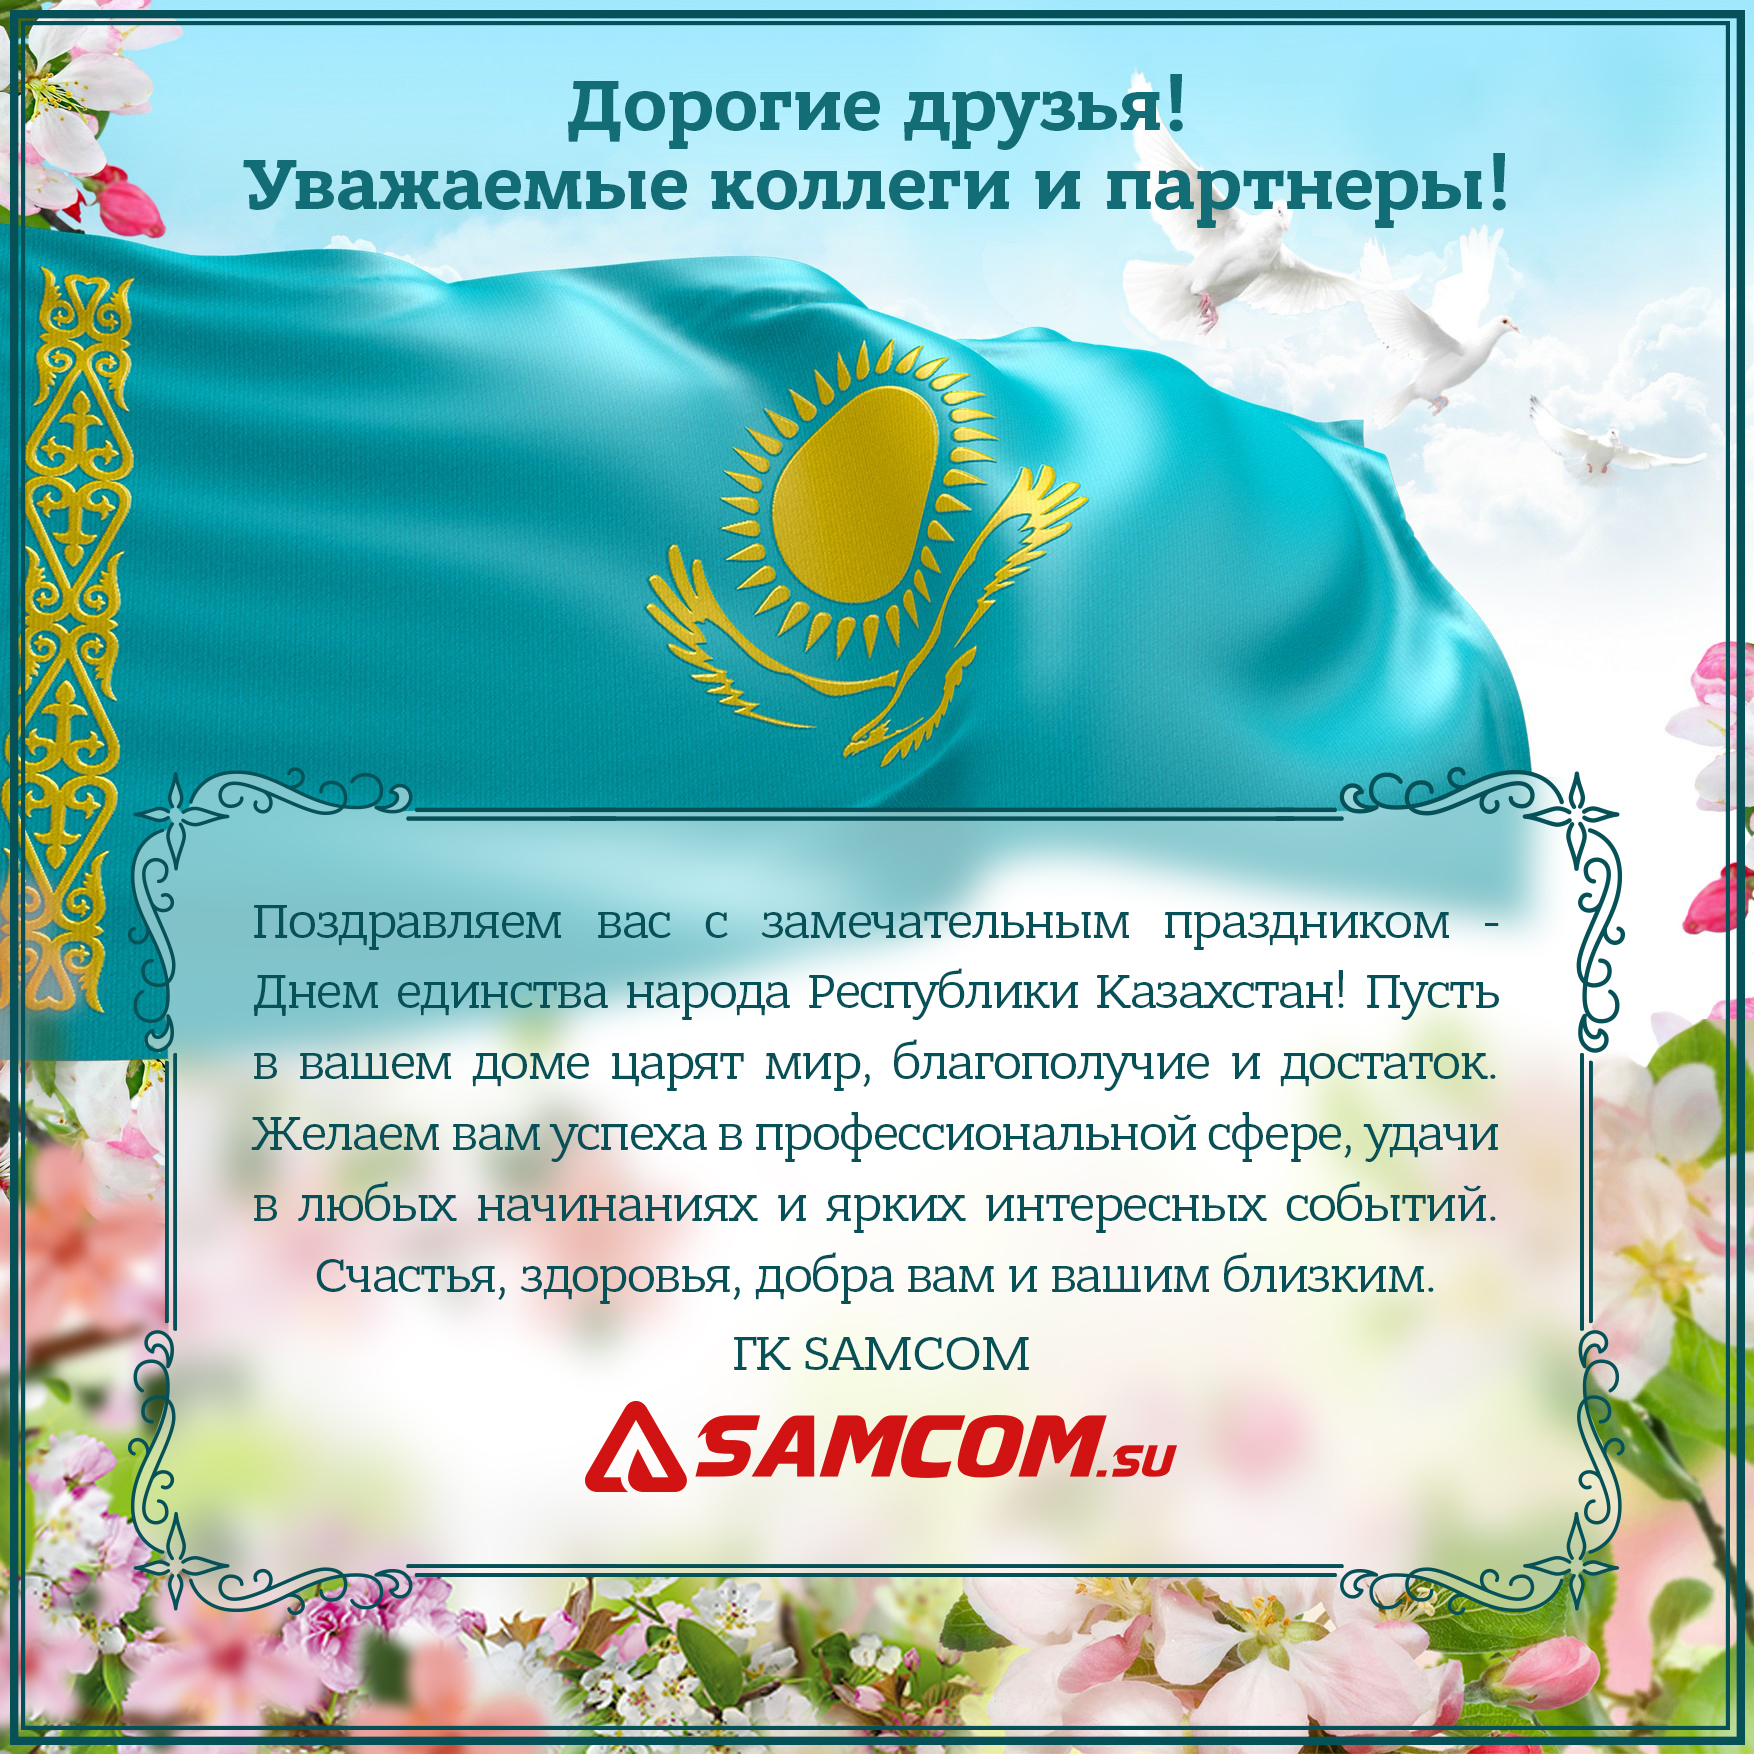 Поздравляем с Днем единства народа Республики Казахстан!